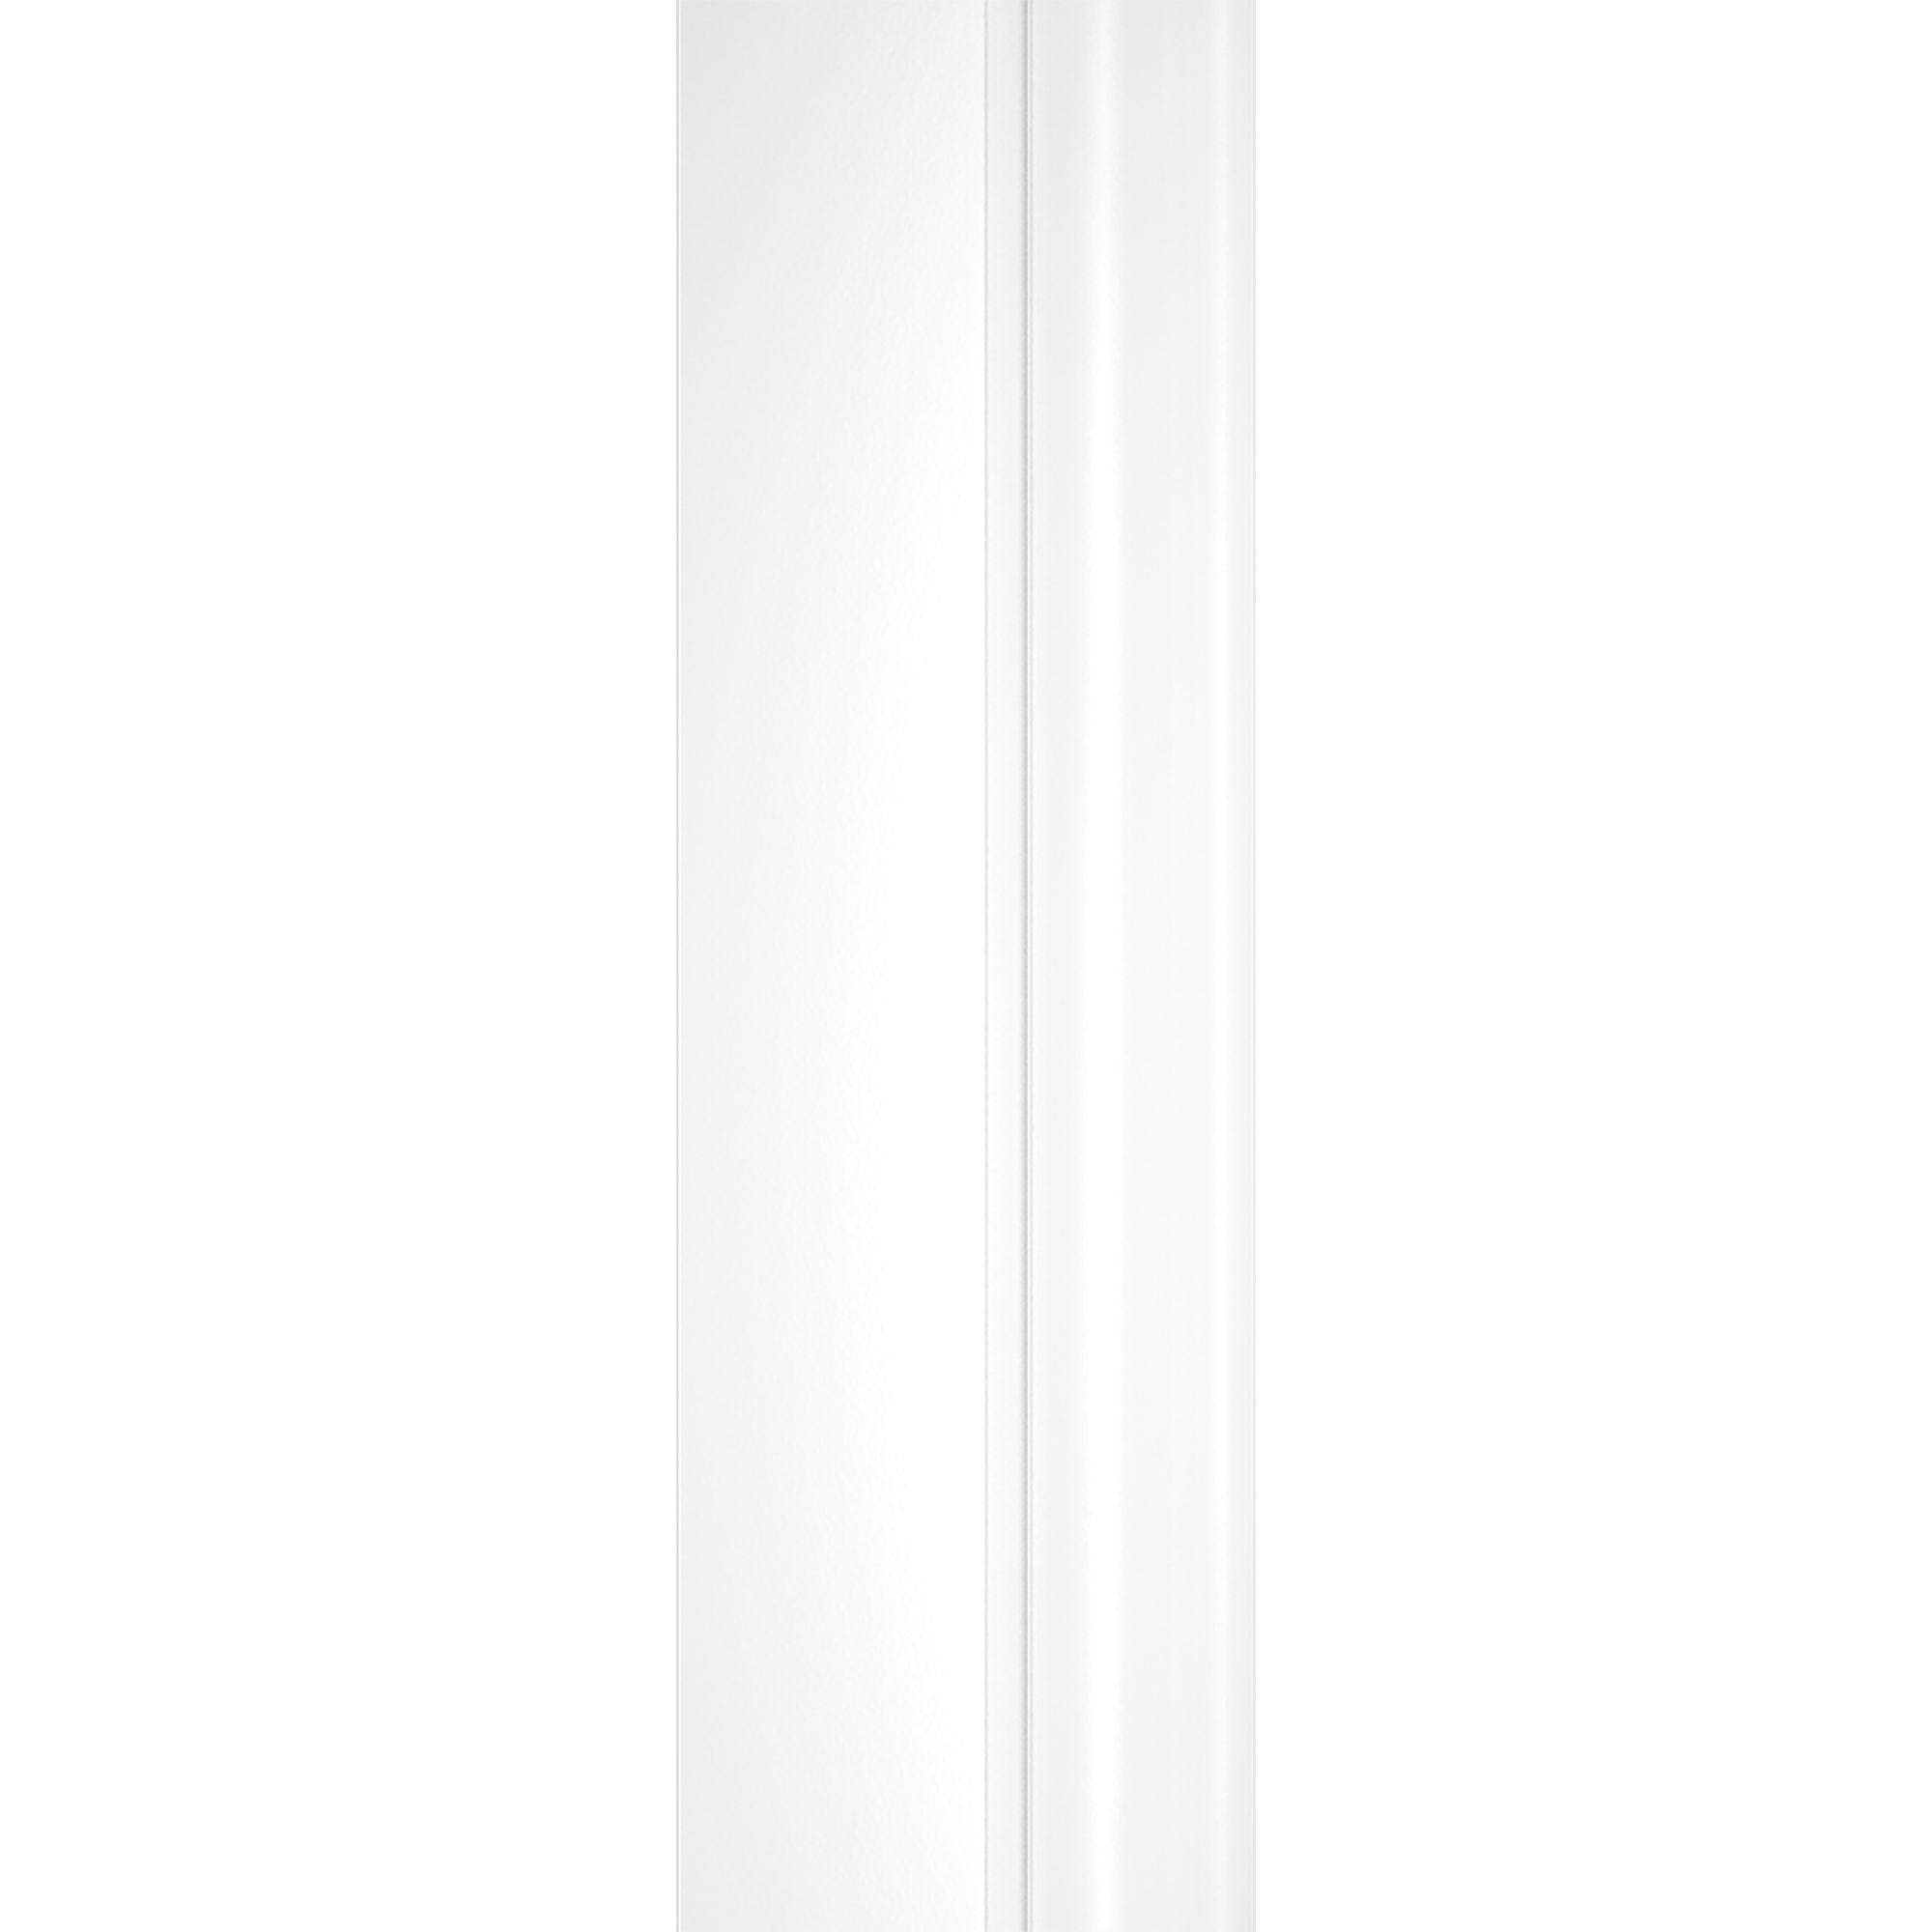 Schulte paroi de douche acces d'angle droit avec portes coulissantes, 80x80 - 90x90 cm x 180 cm, verre 4mm, blanc, sérigraphie bandes transversales 3